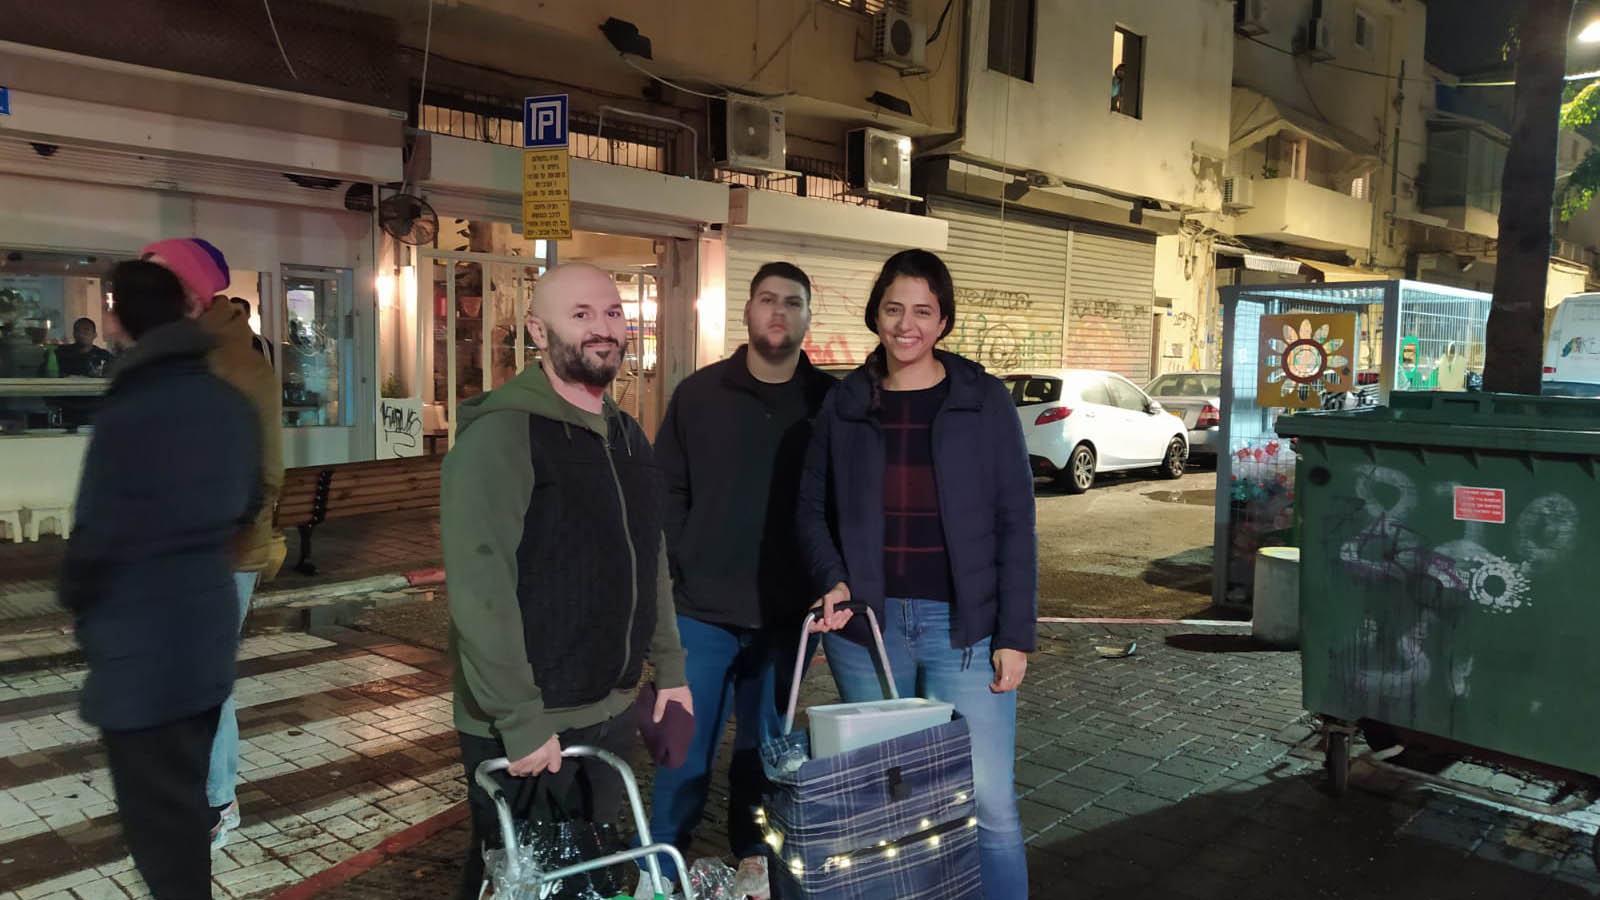 הפעילים החברתיים דניאל סתיו ודוד אגייב, מחלקים תה וסנדוויצ'ים לחסרי הבית לאורך ההפגנה (צילום: דבר)